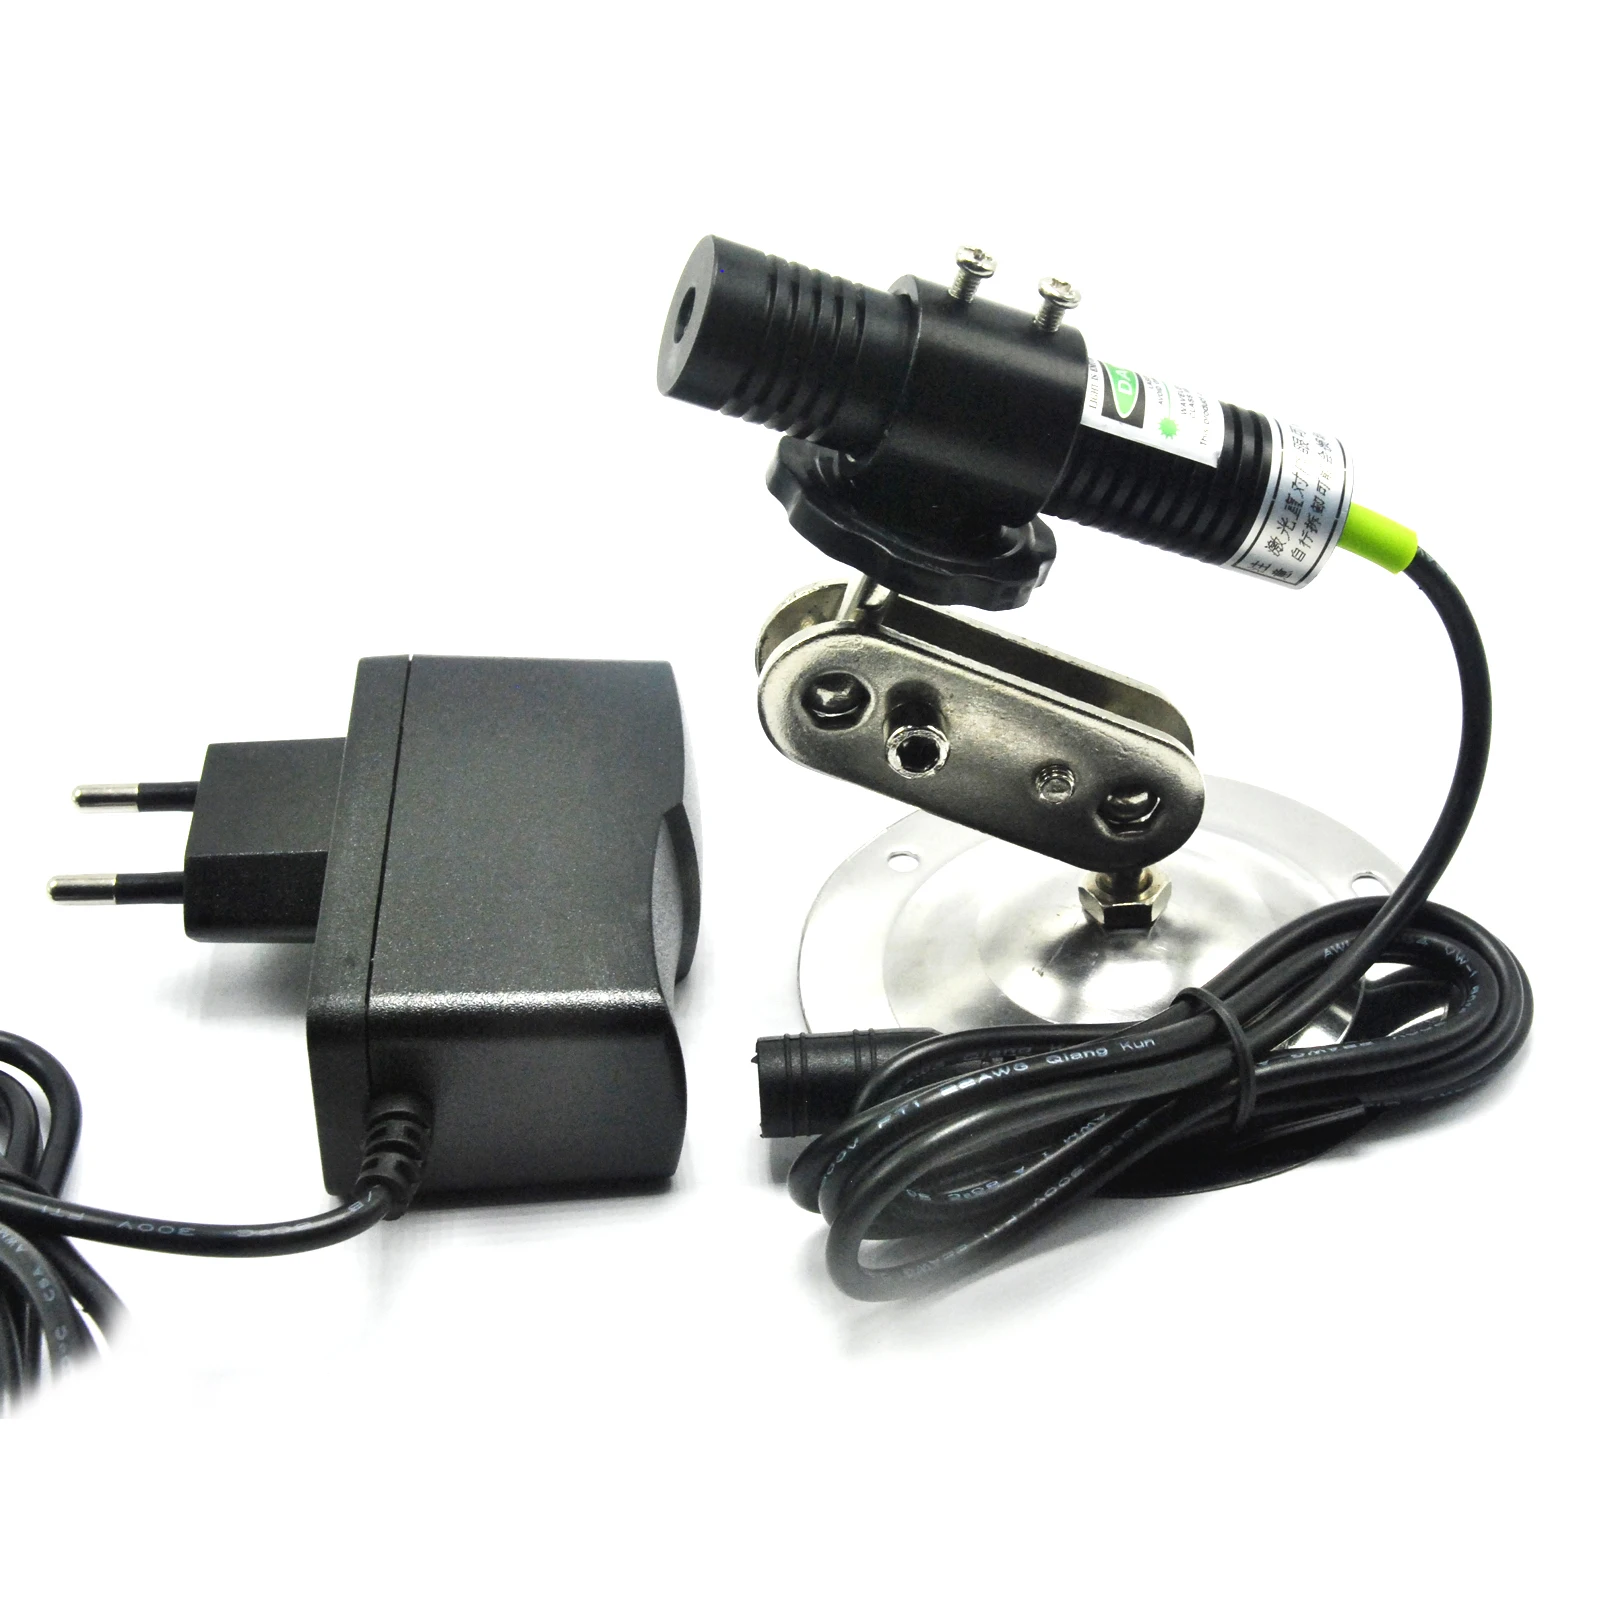 Зеленый лазерный диодный Линейный модуль-локатор 532nm 30 мВт для режущей машины + адаптер + крепление от AliExpress RU&CIS NEW